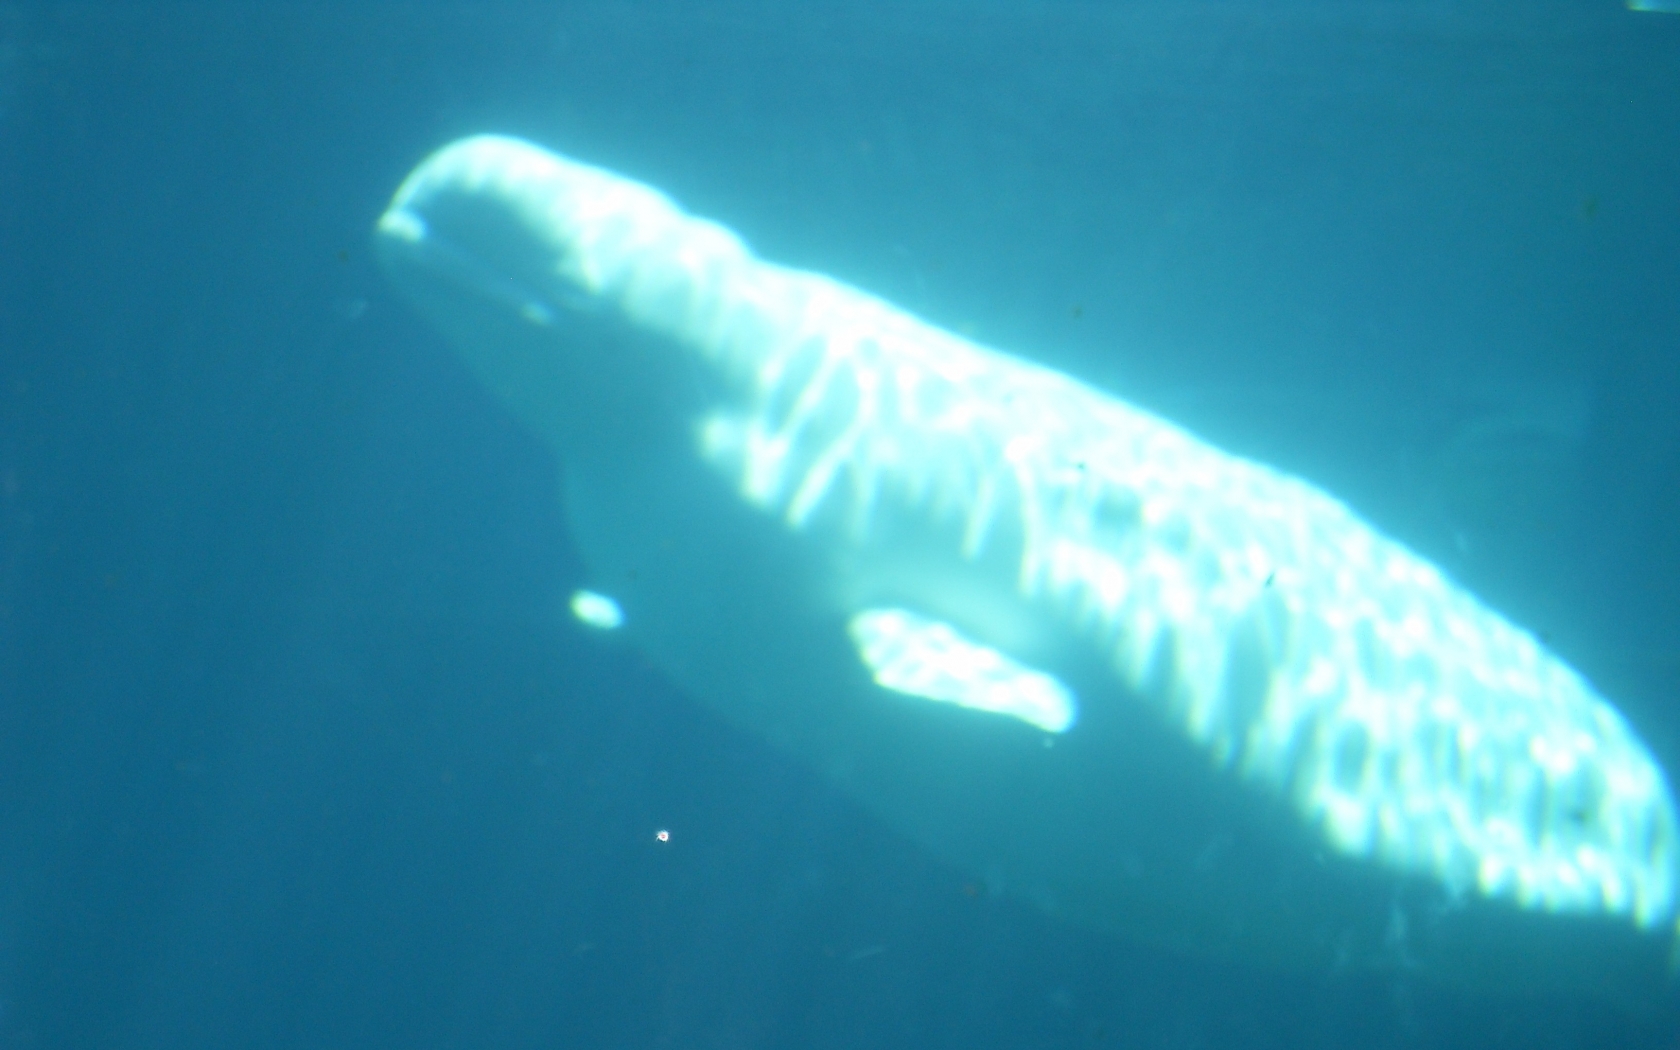 Beluga Whale Wallpaper